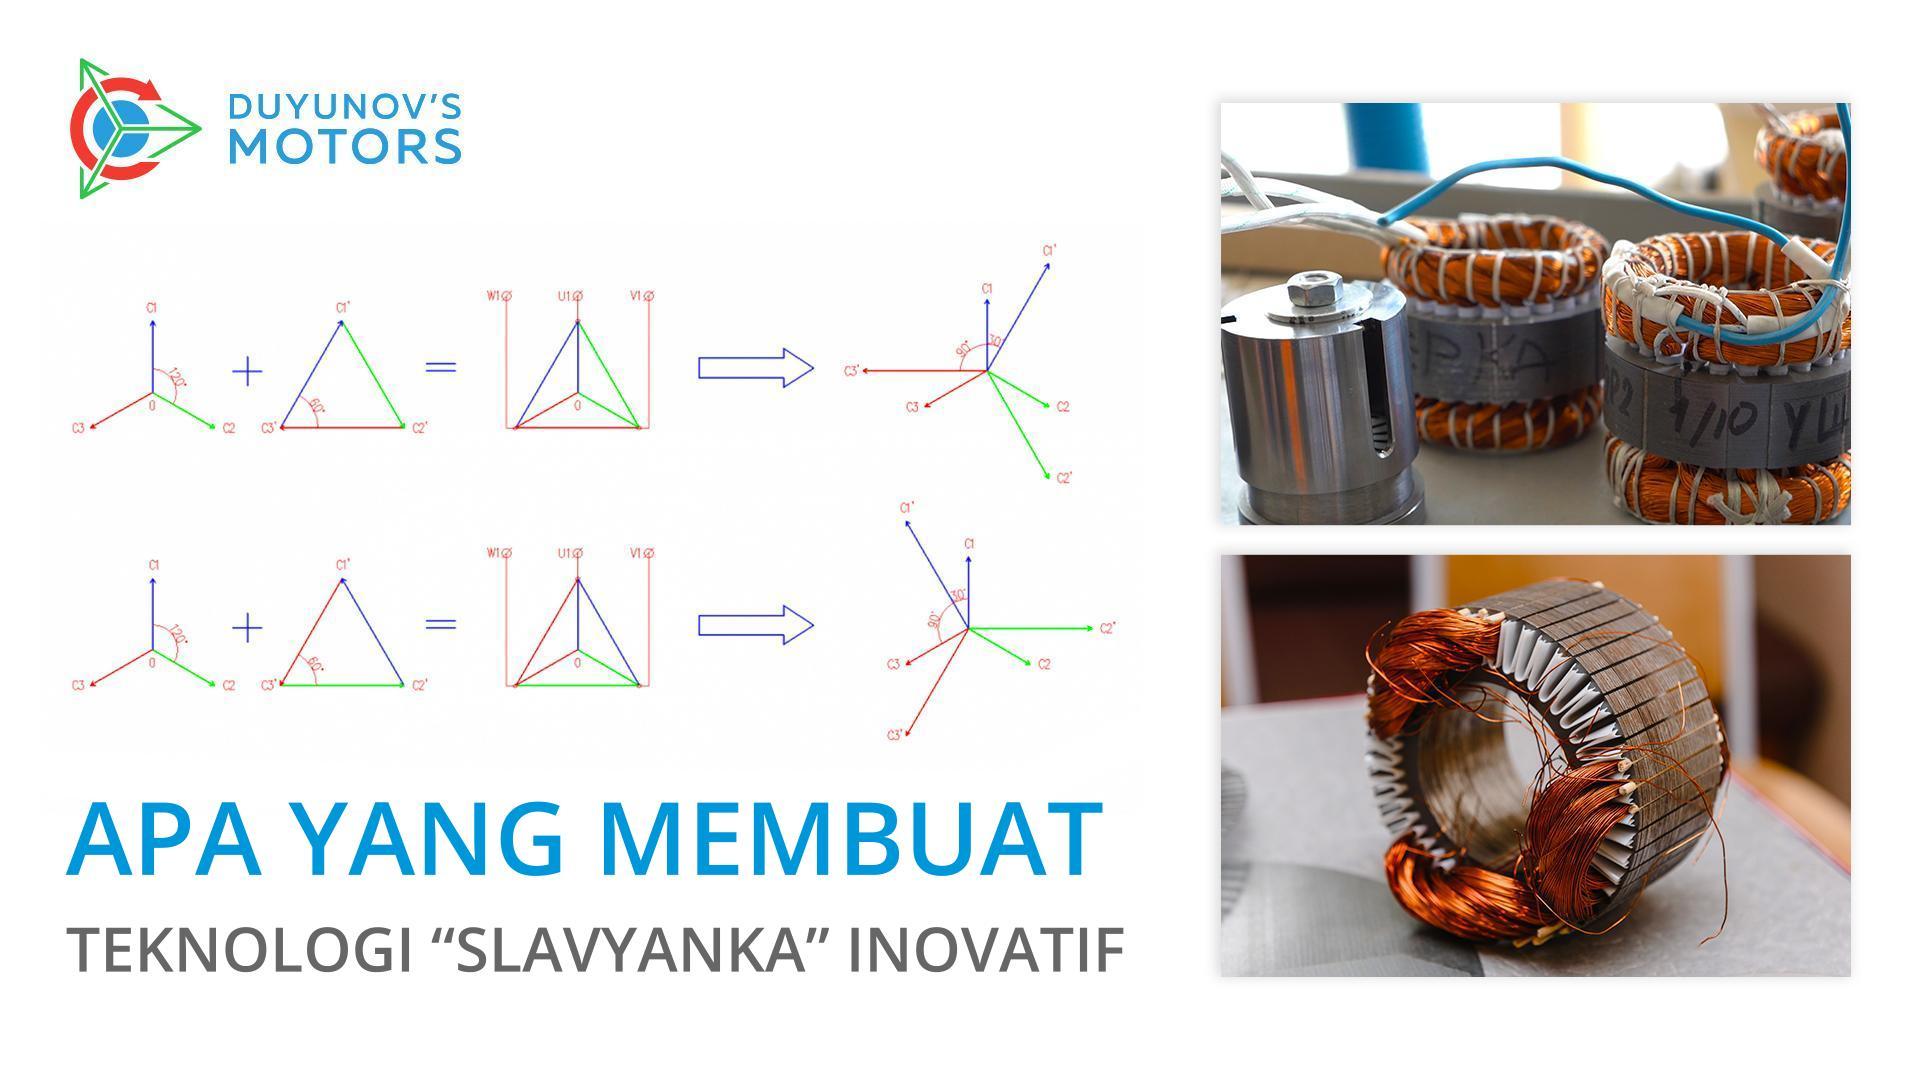 Apa yang membuat teknologi "Slavyanka" inovatif?